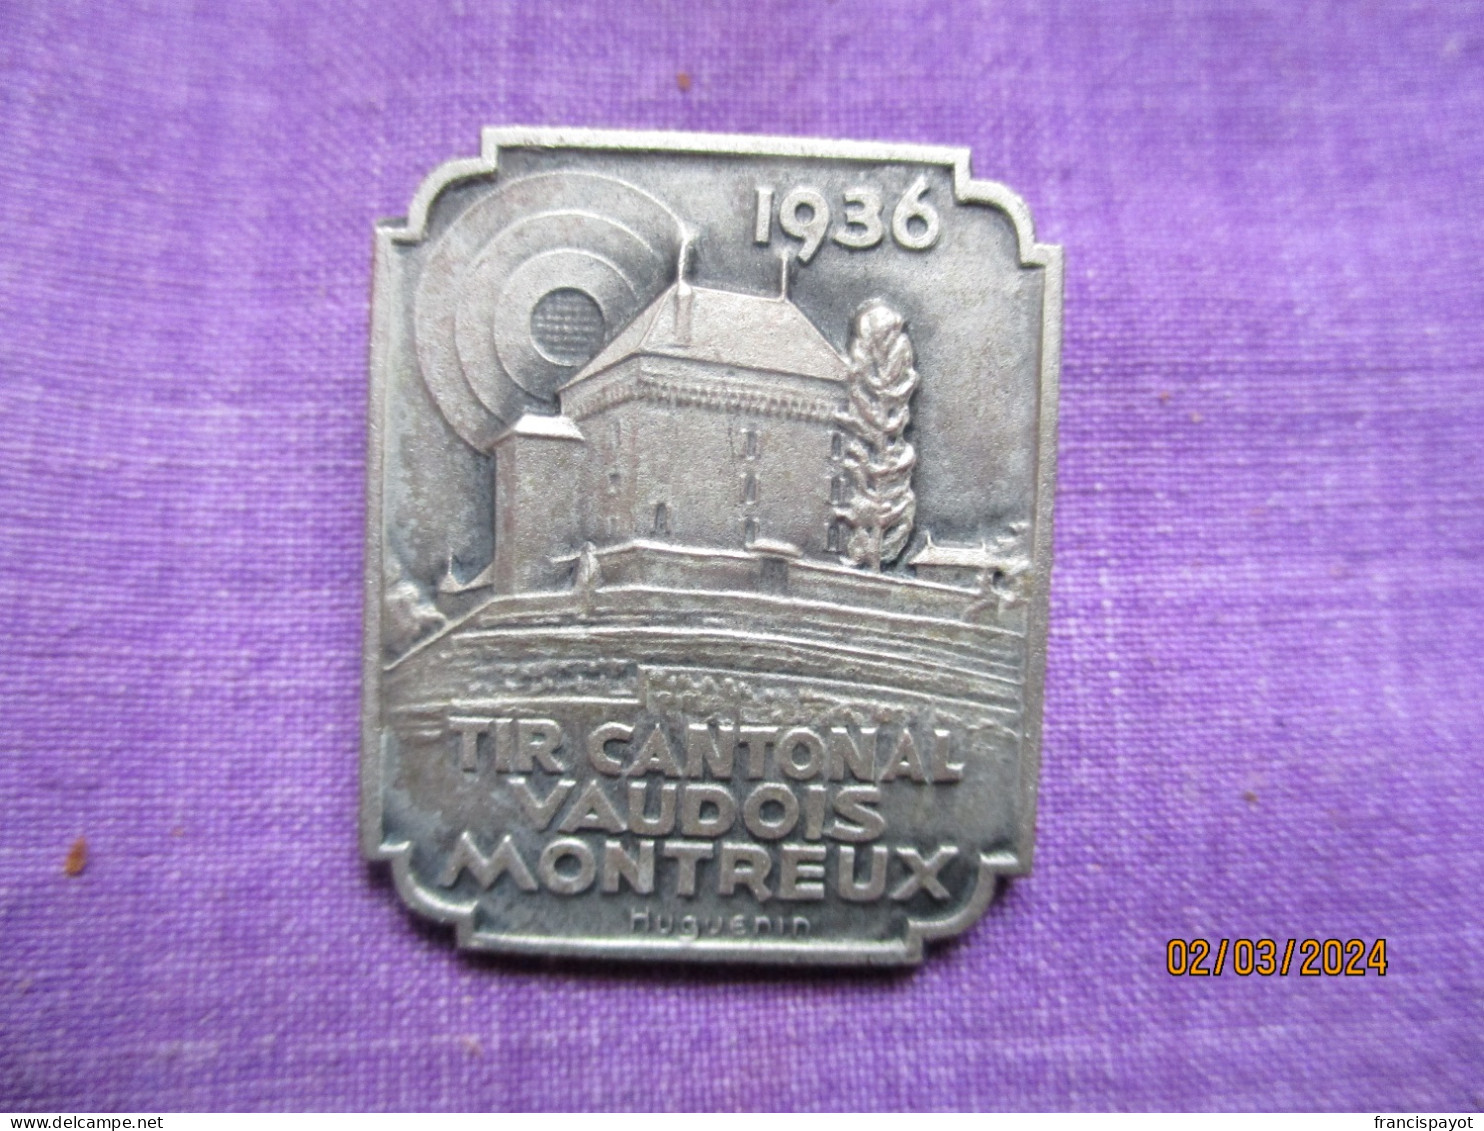 Suisse: épinglette Tir Cantonal Vaudois Montreux 1931 - Gewerbliche